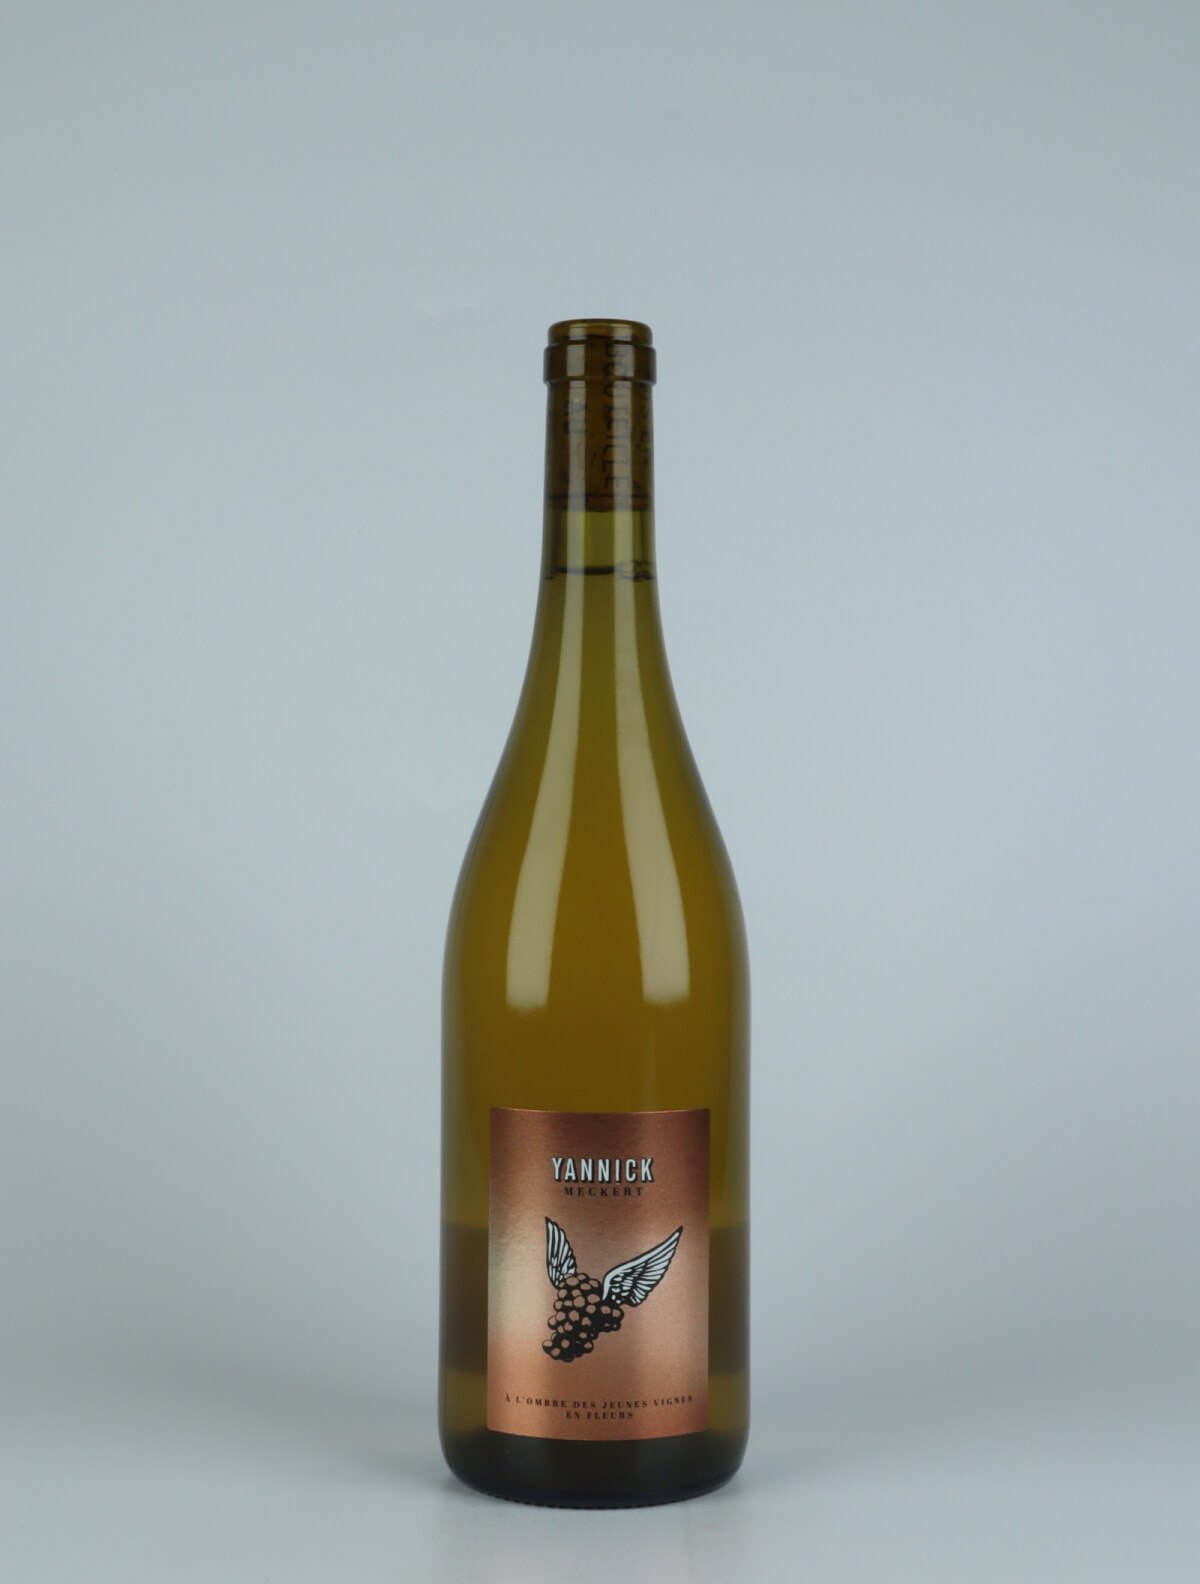 A bottle N.V. À l'Ombre des Jeunes Vignes en Fleurs (21/20) White wine from Yannick Meckert, Alsace in France